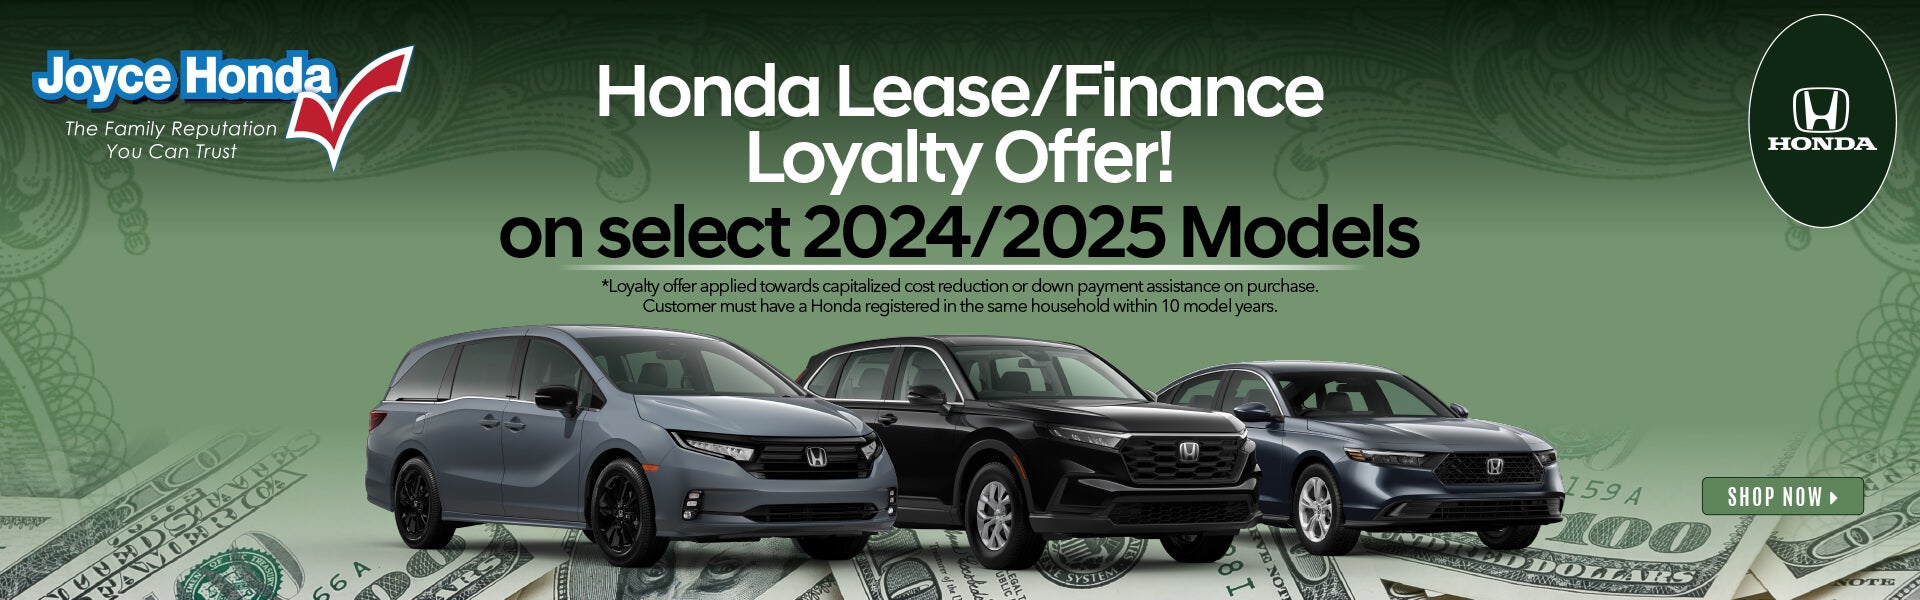 Honda Lease/Finance Offer! 